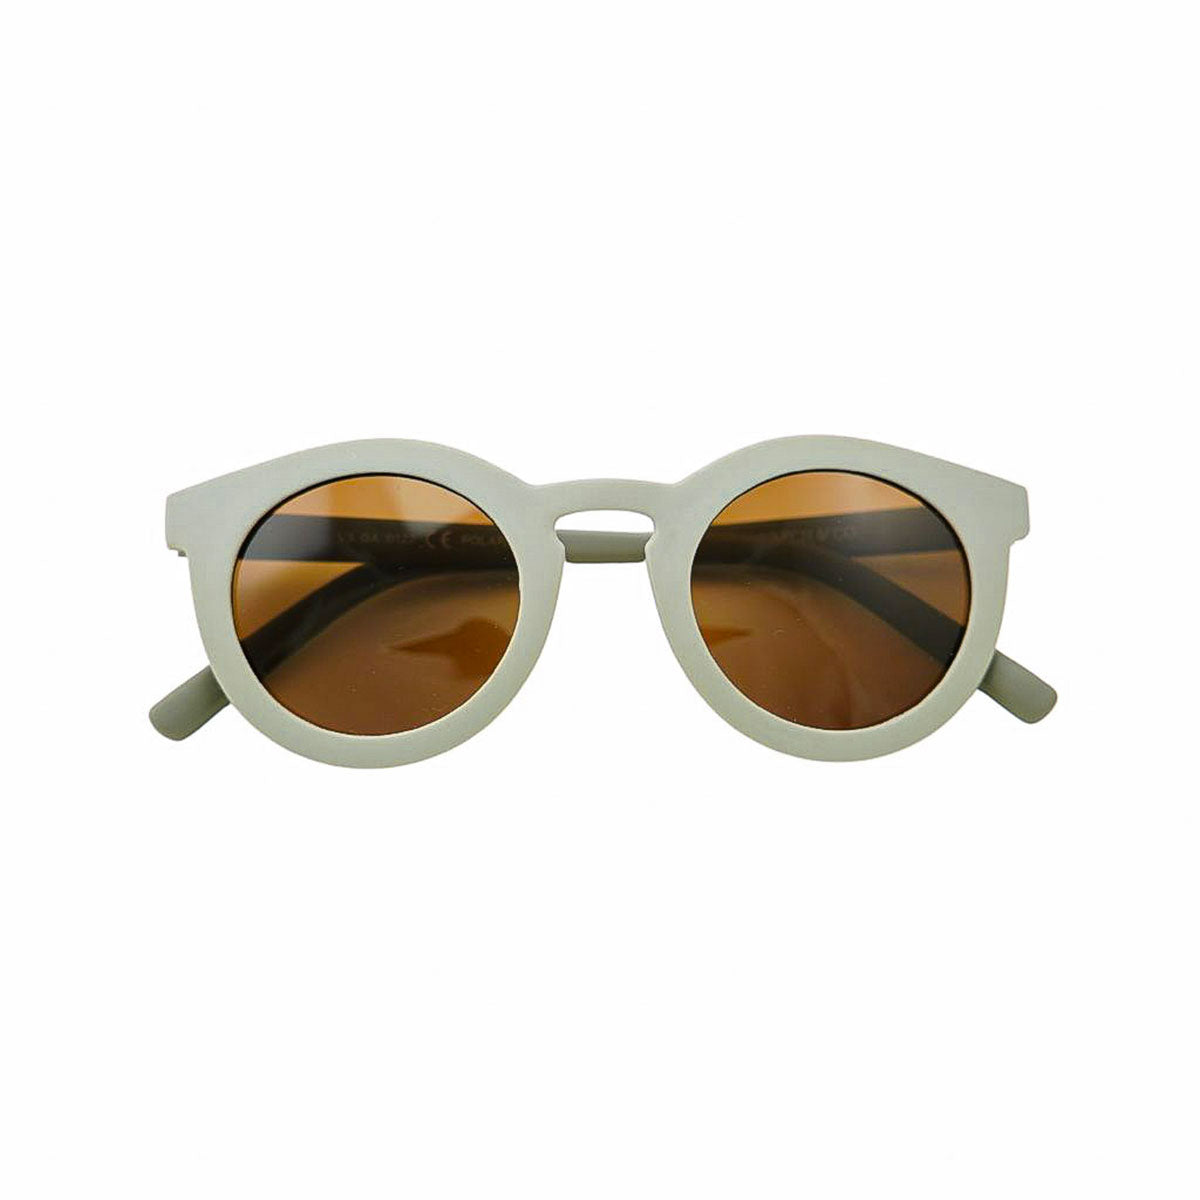 Grech & Co. Sonnenbrille klassisches biegsames Moor für Erwachsene